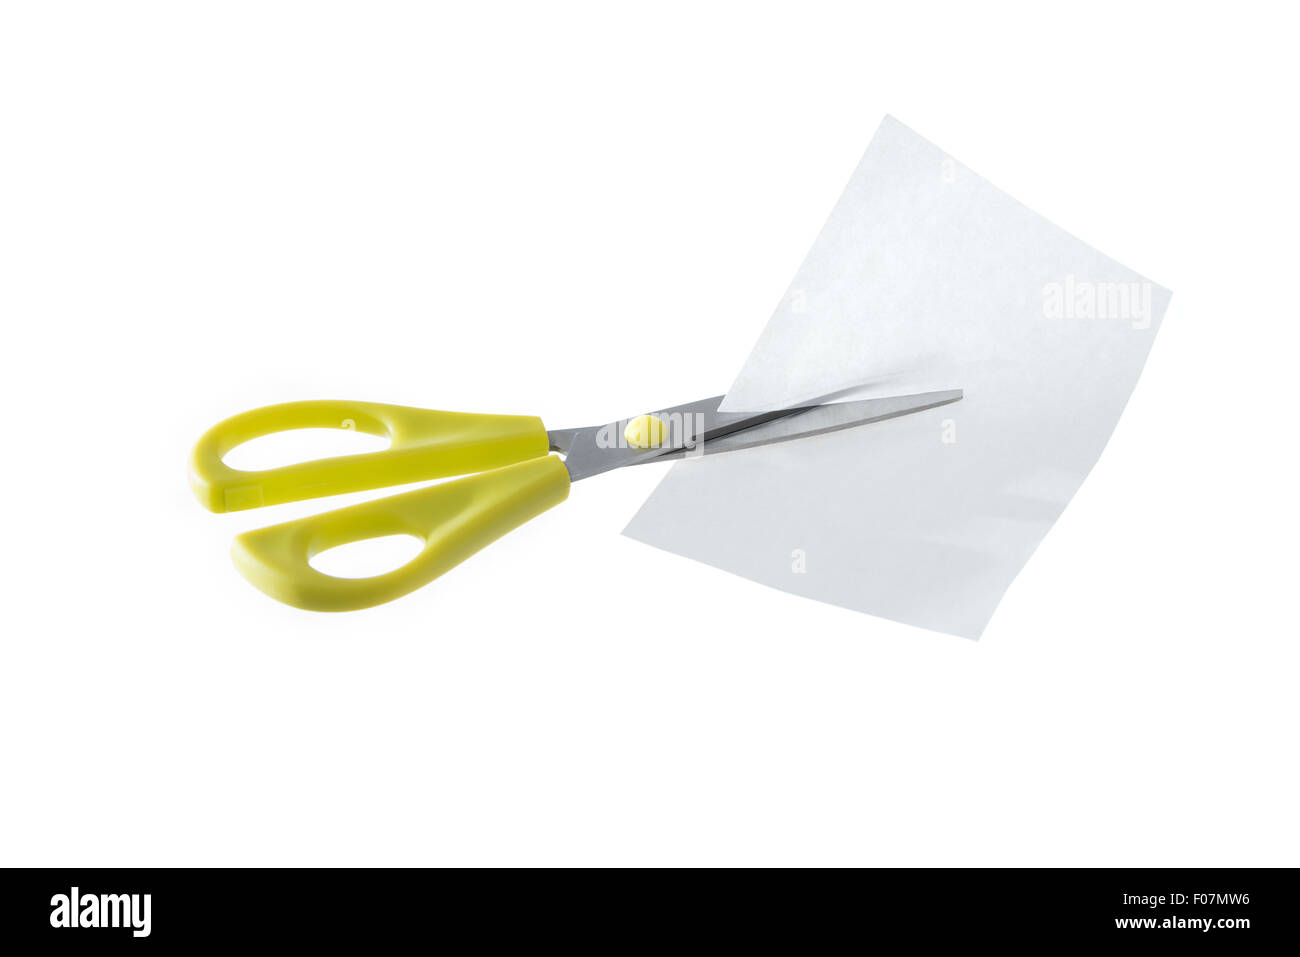 Une paire de ciseaux jaune couper un morceau de papier blanc isolé sur fond blanc. Banque D'Images